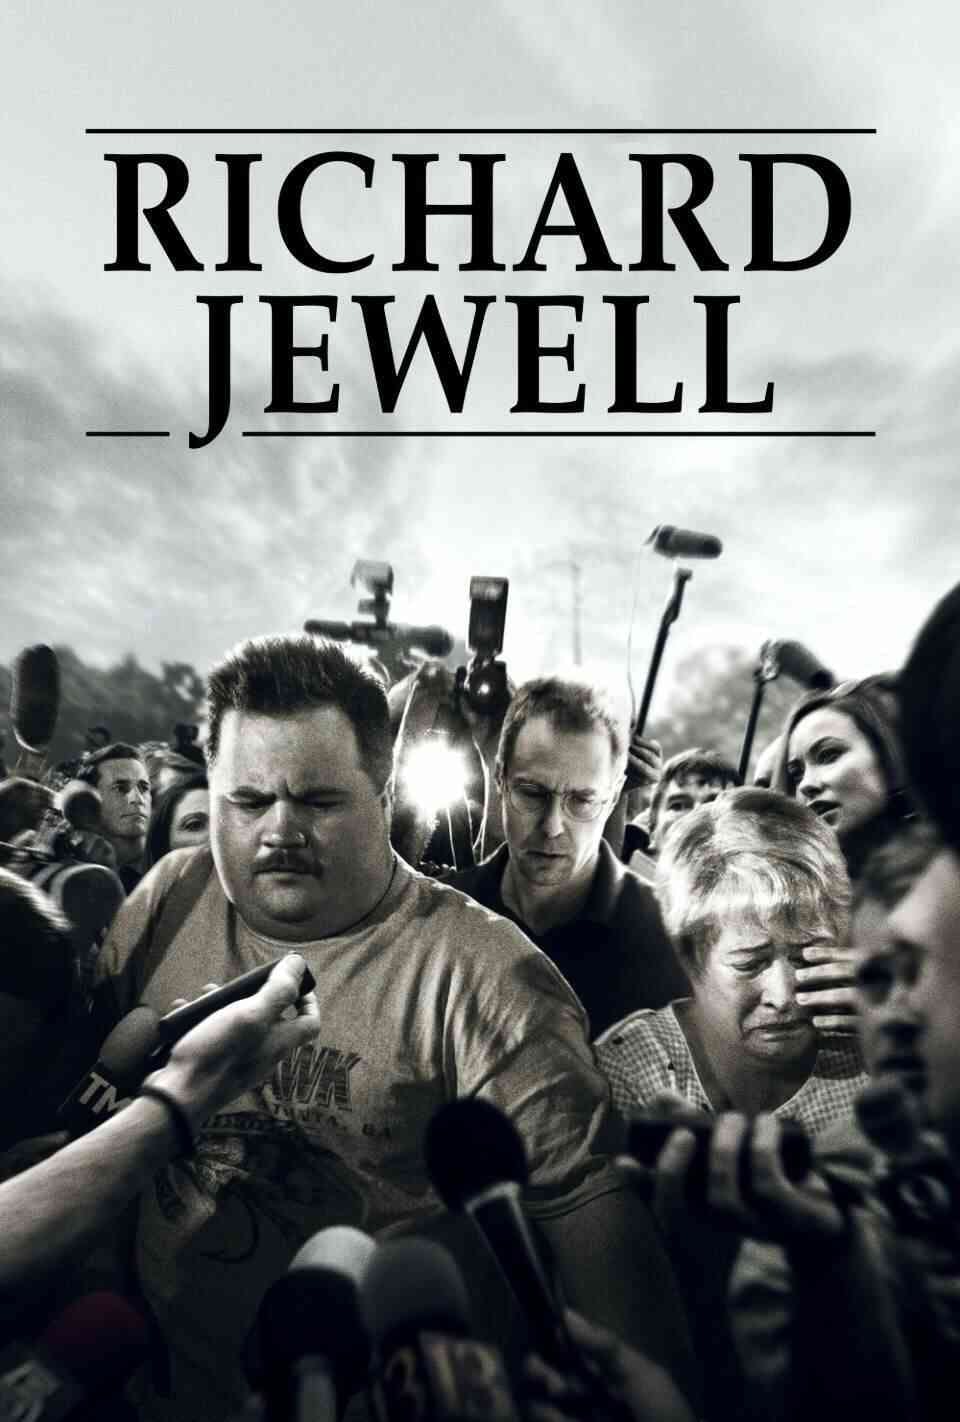 Read Richard Jewell screenplay (poster)